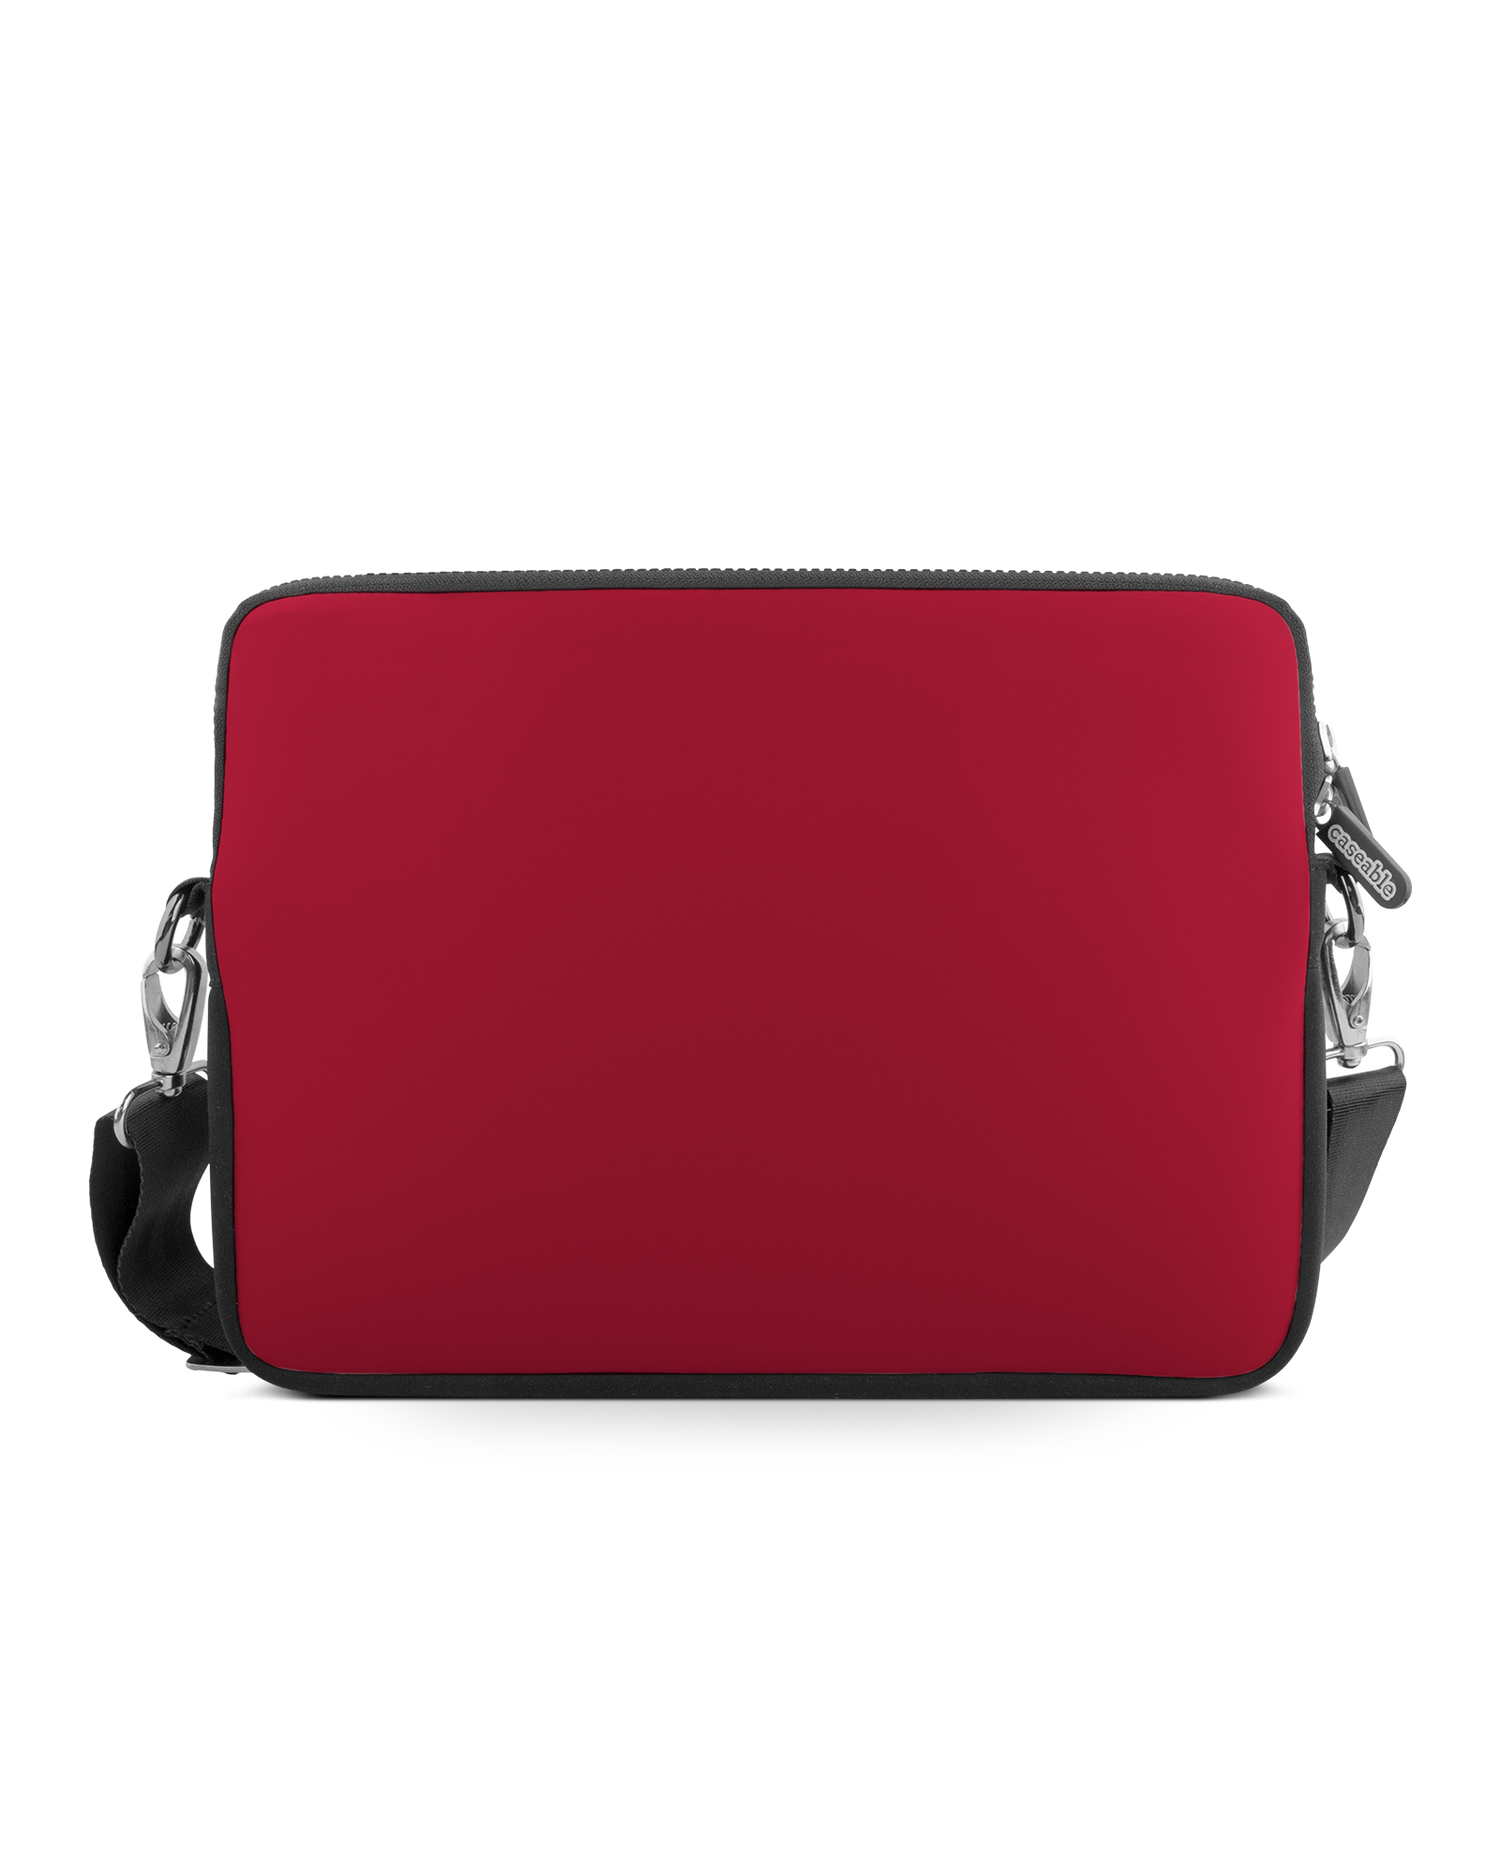 RED Premium Laptoptasche 17 Zoll: Vorderansicht